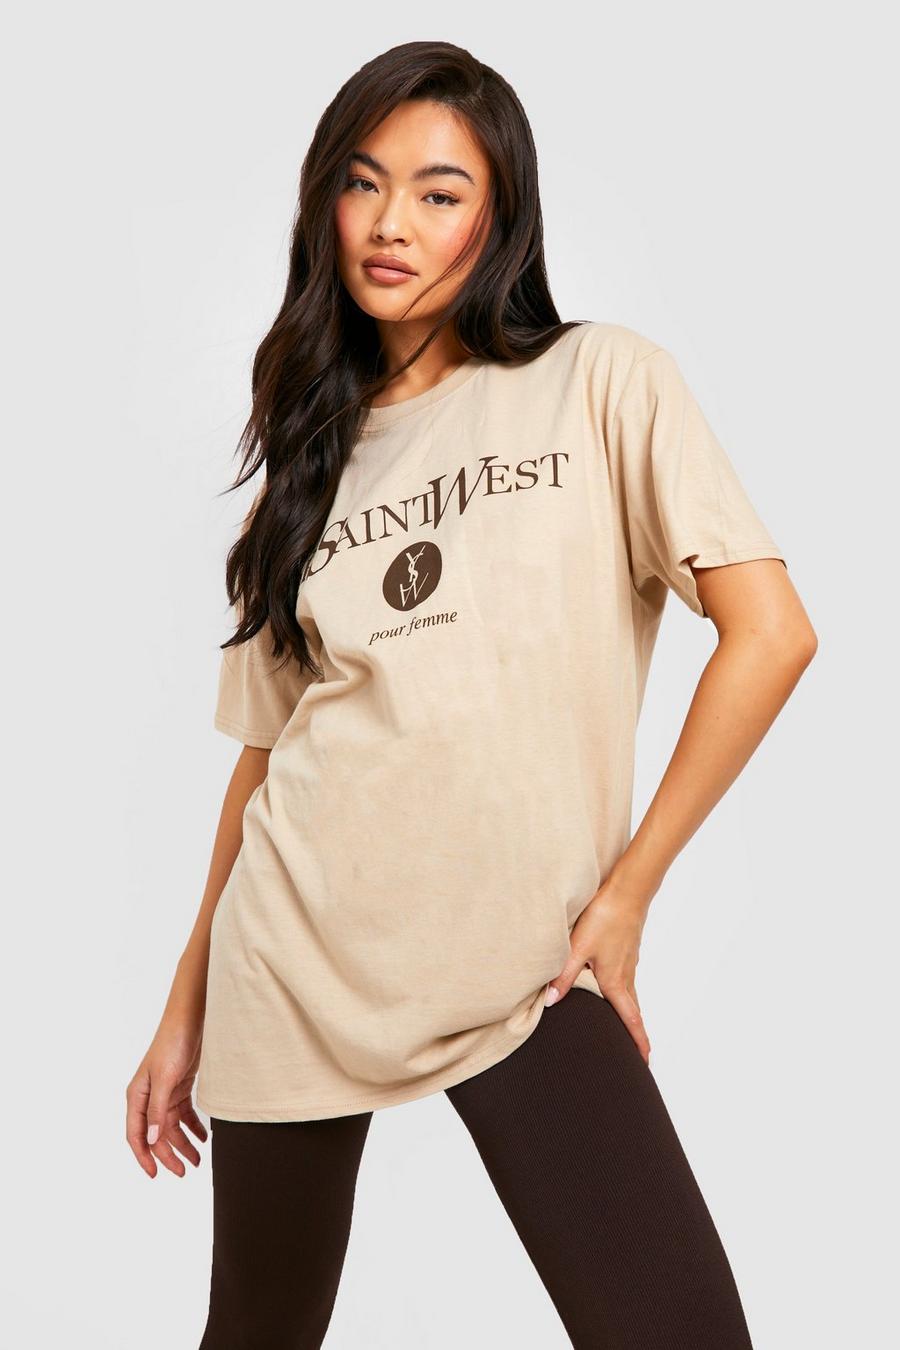 Sand beige Ye Saint West Pour Femme Oversized T-shirt